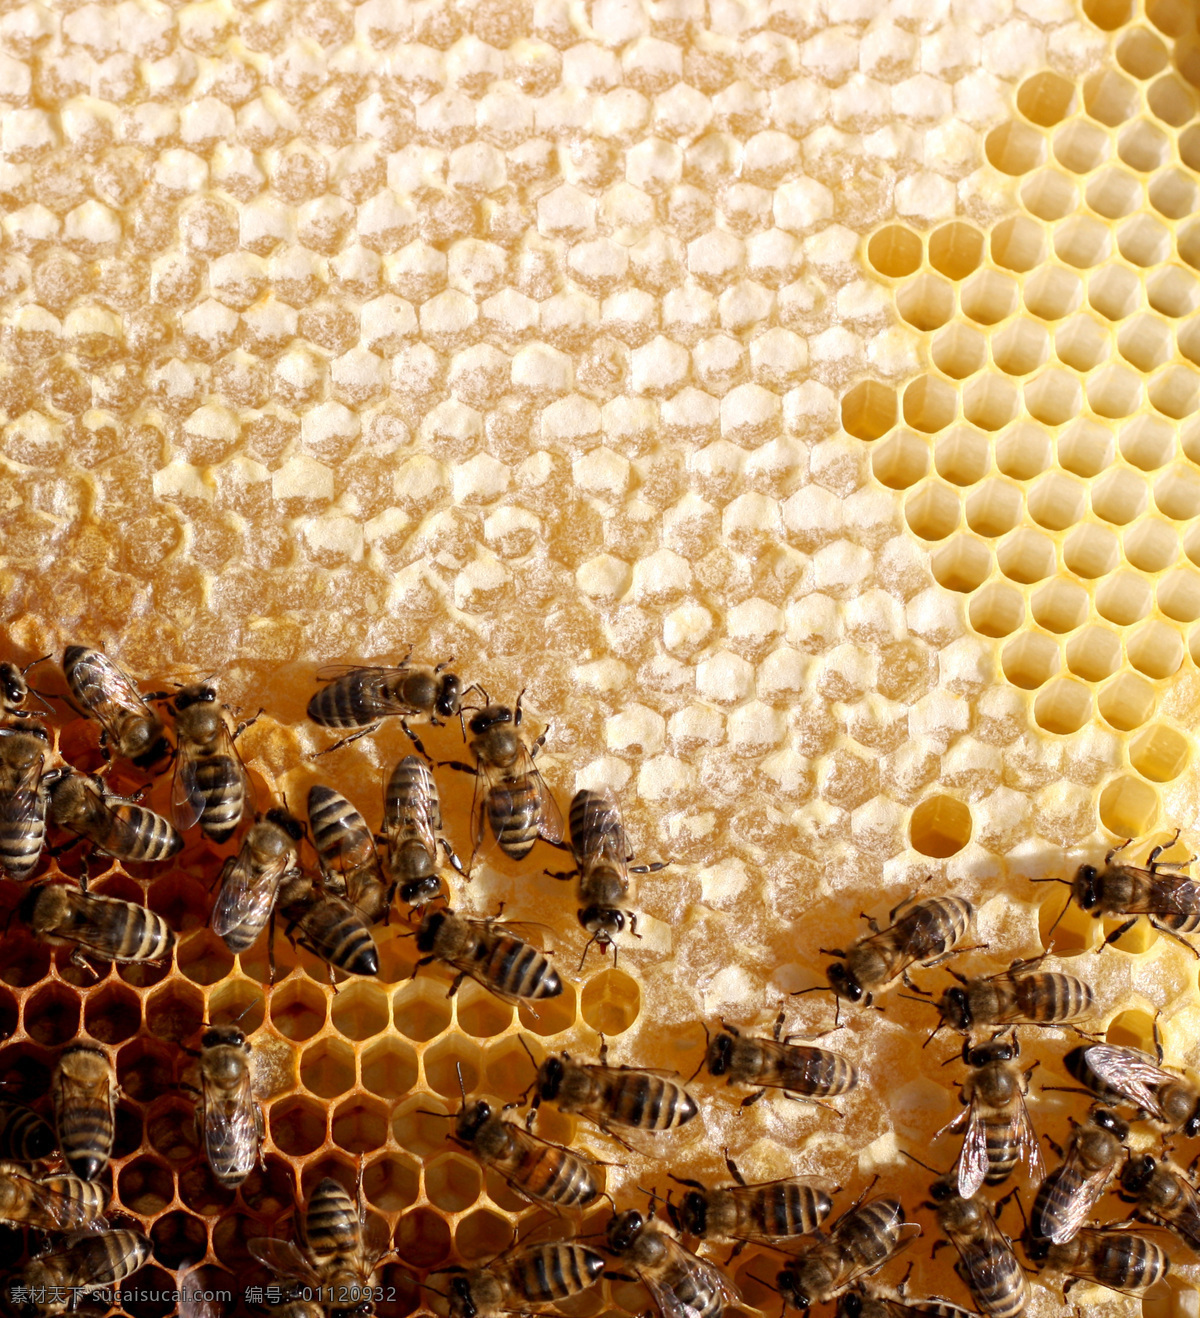 正在 蜂窝 上 忙碌 蜜蜂 蜂巢 蜂蜜 蜂胶 补品 昆虫世界 生物世界